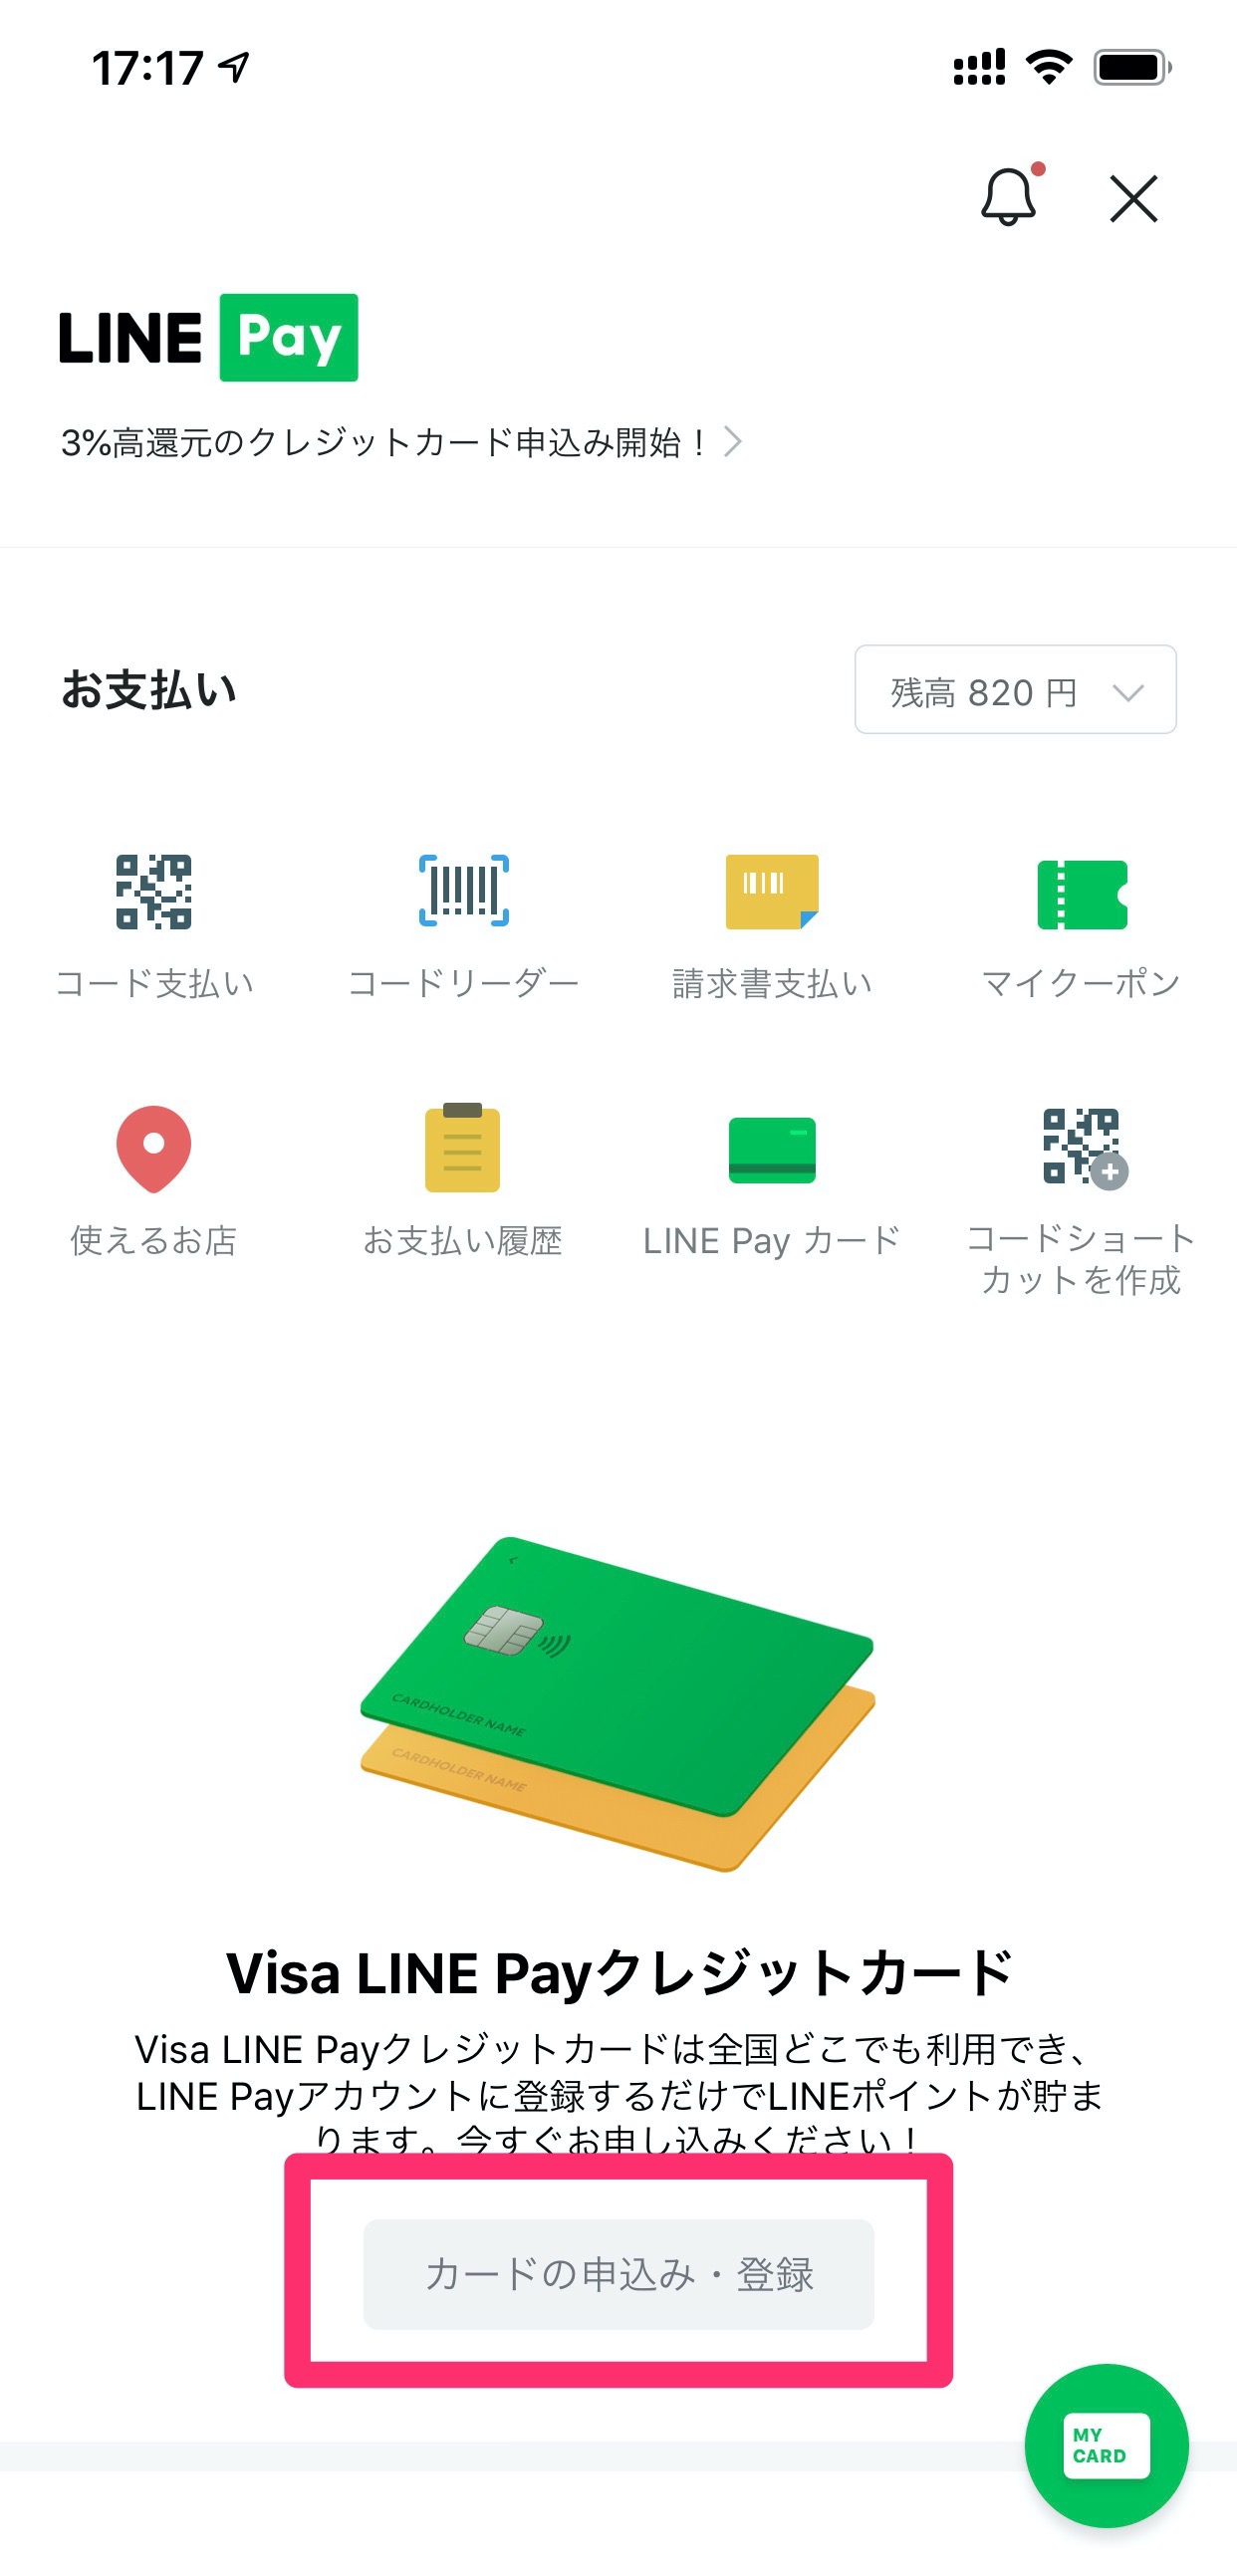 「Visa LINE Payカード」届いた→LINE PayアプリとKyashアプリに登録してみた